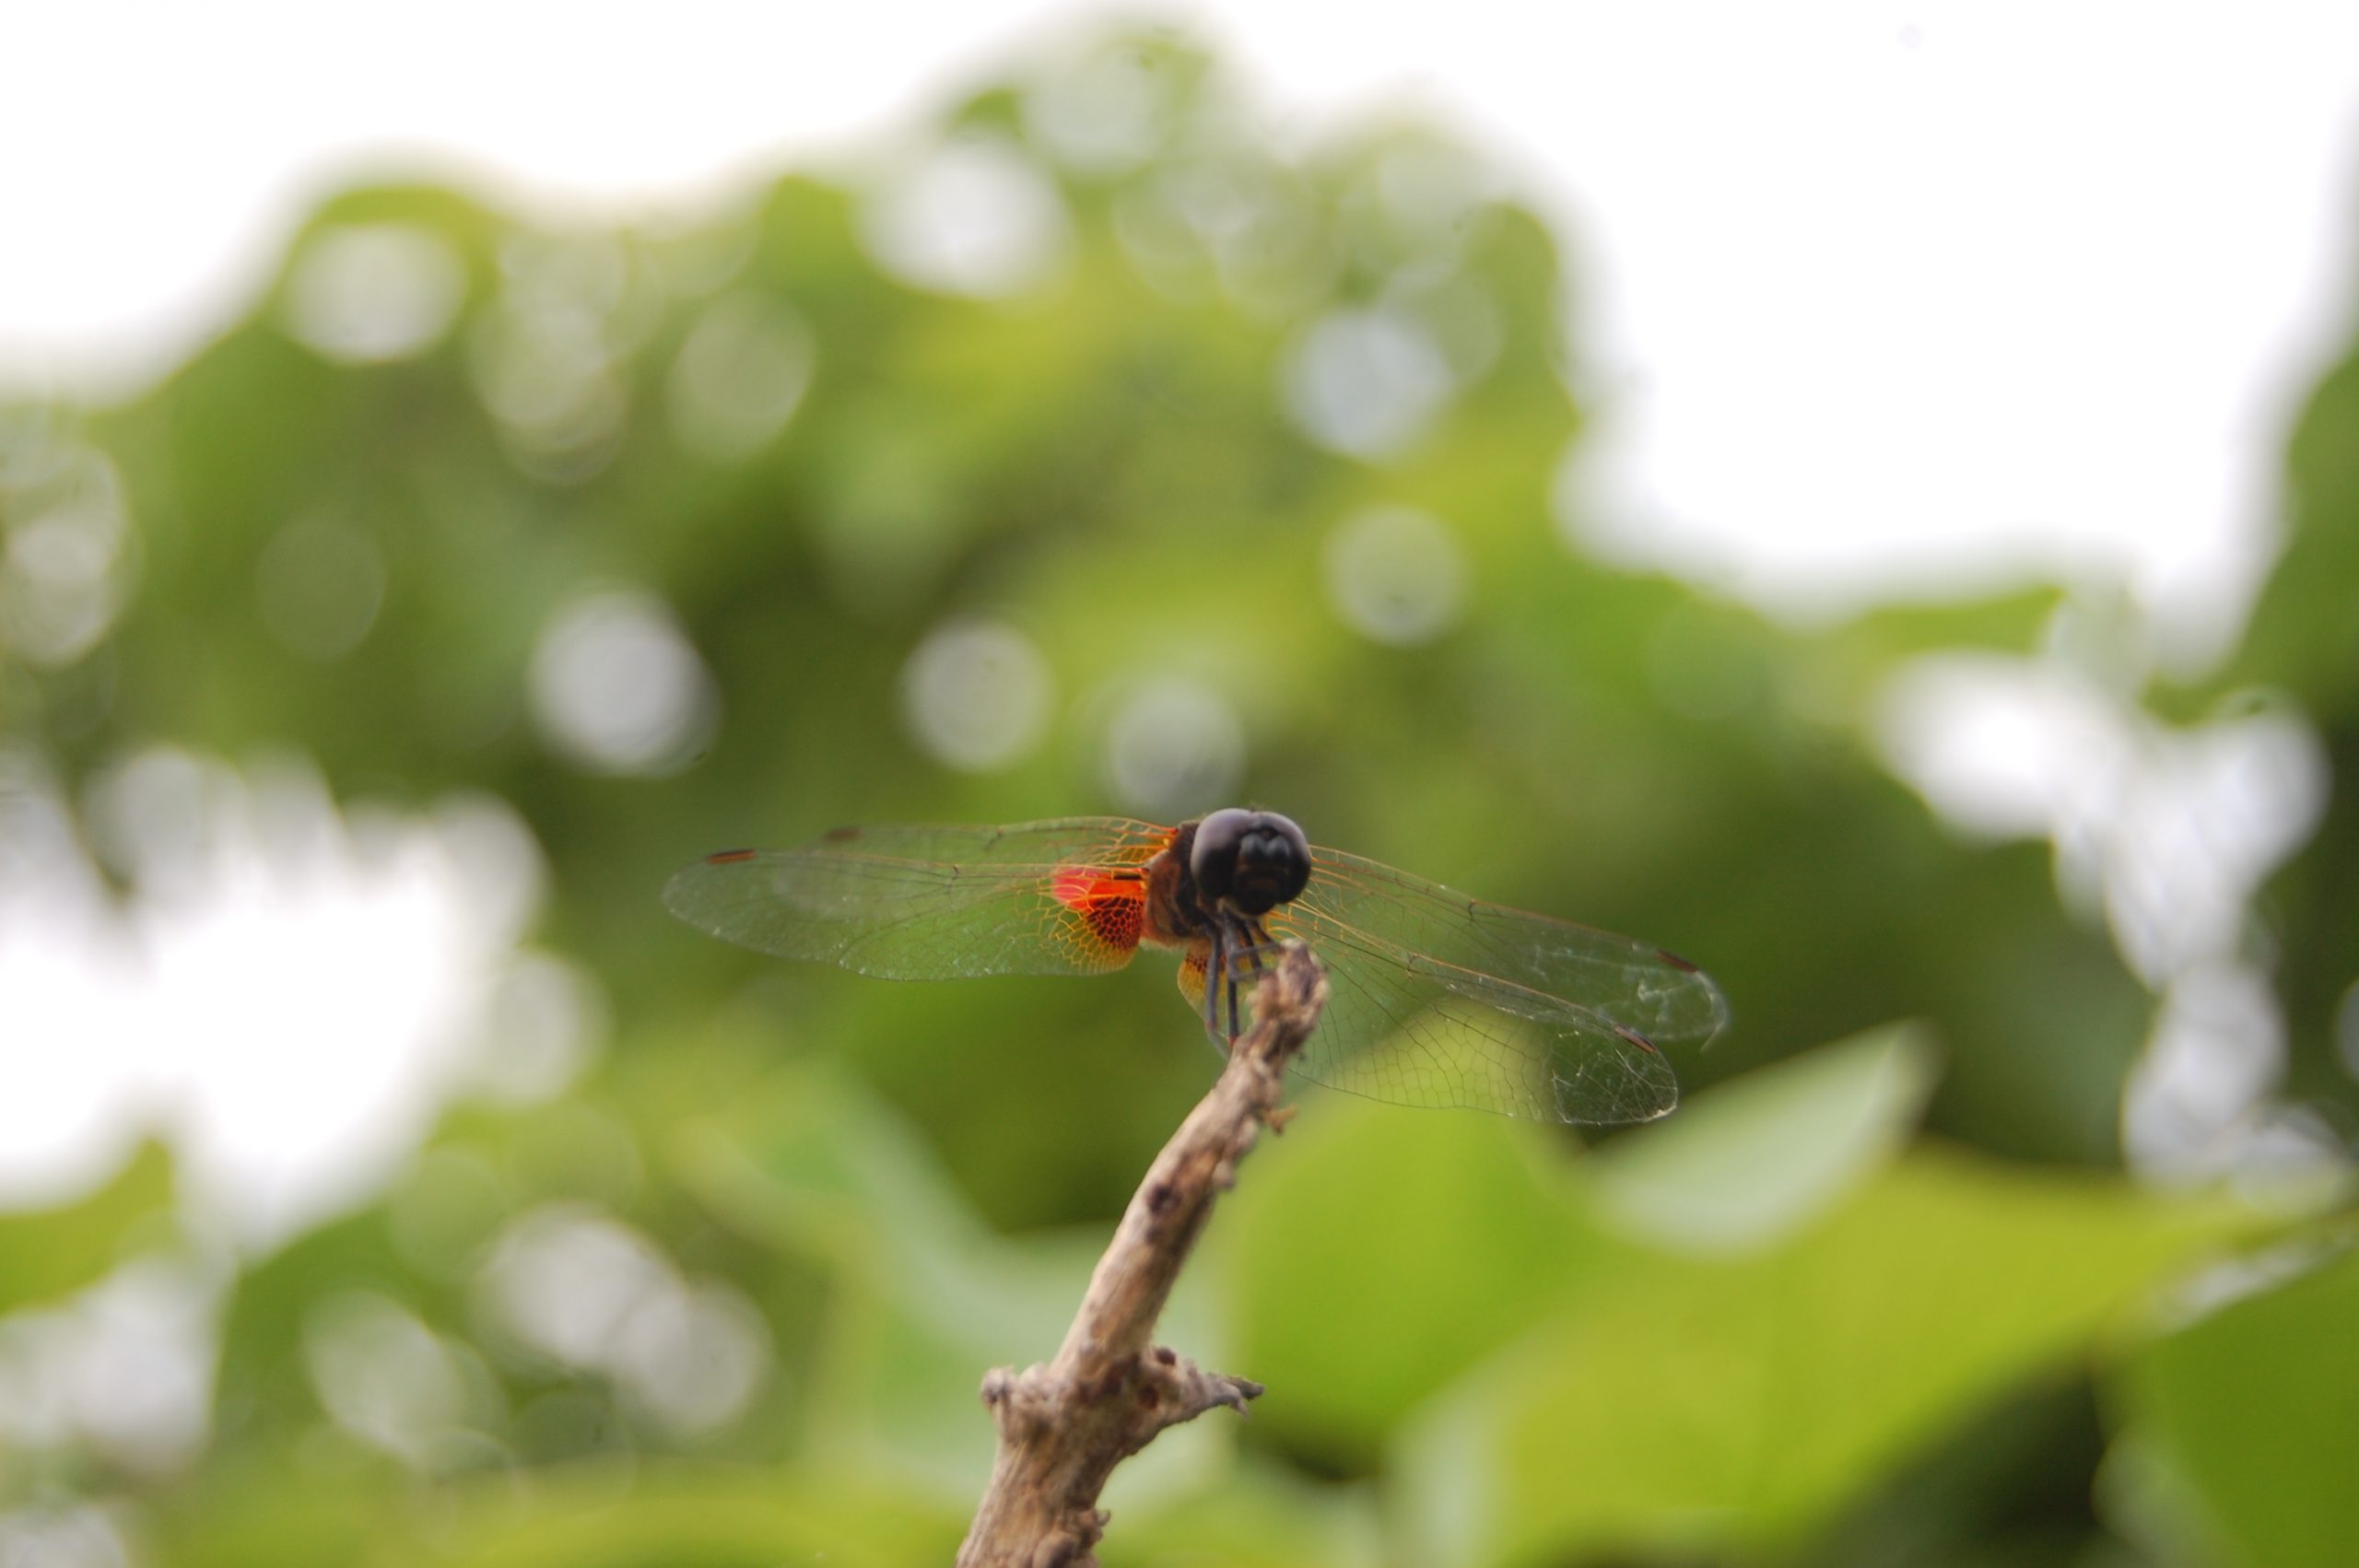 dragonfly on a twig